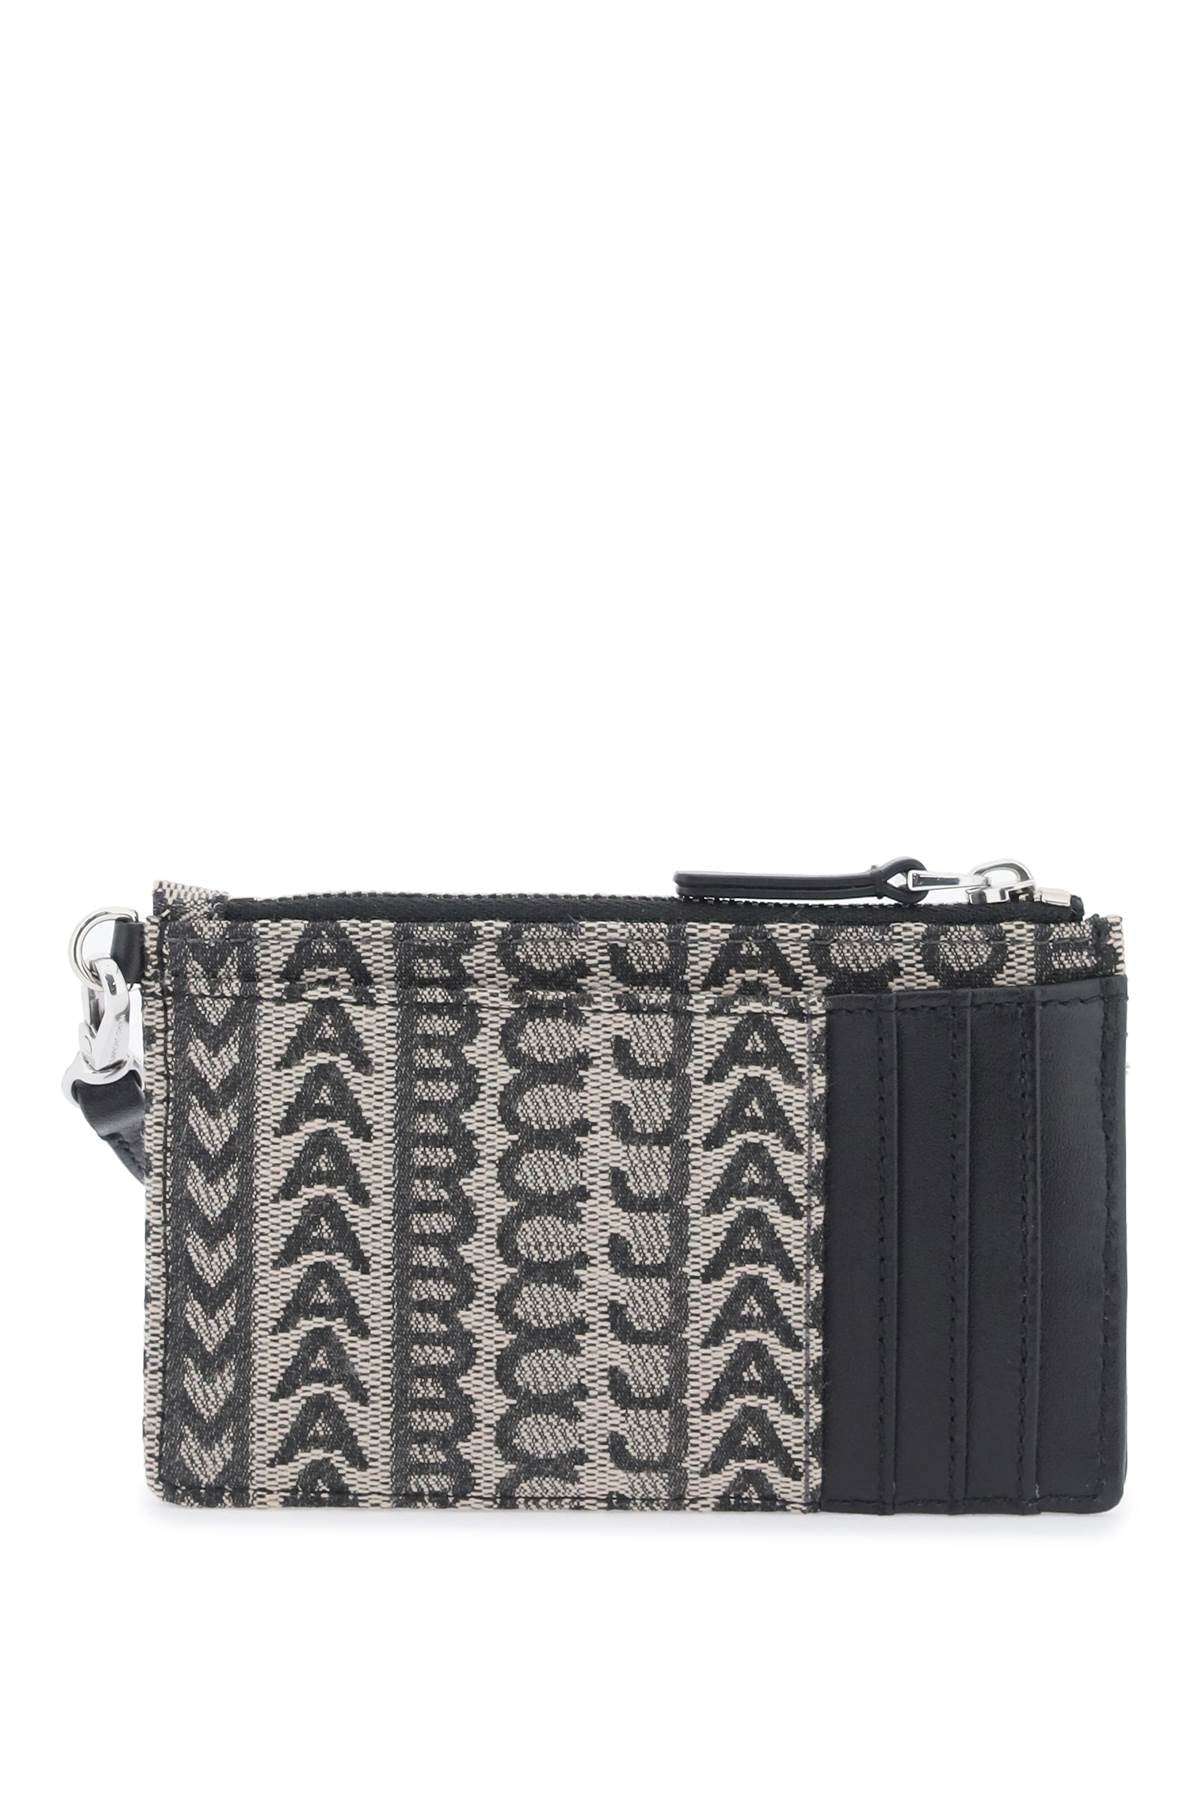 Marc Jacobs The Monogram Top Zip Wristlet Wallet   Nero